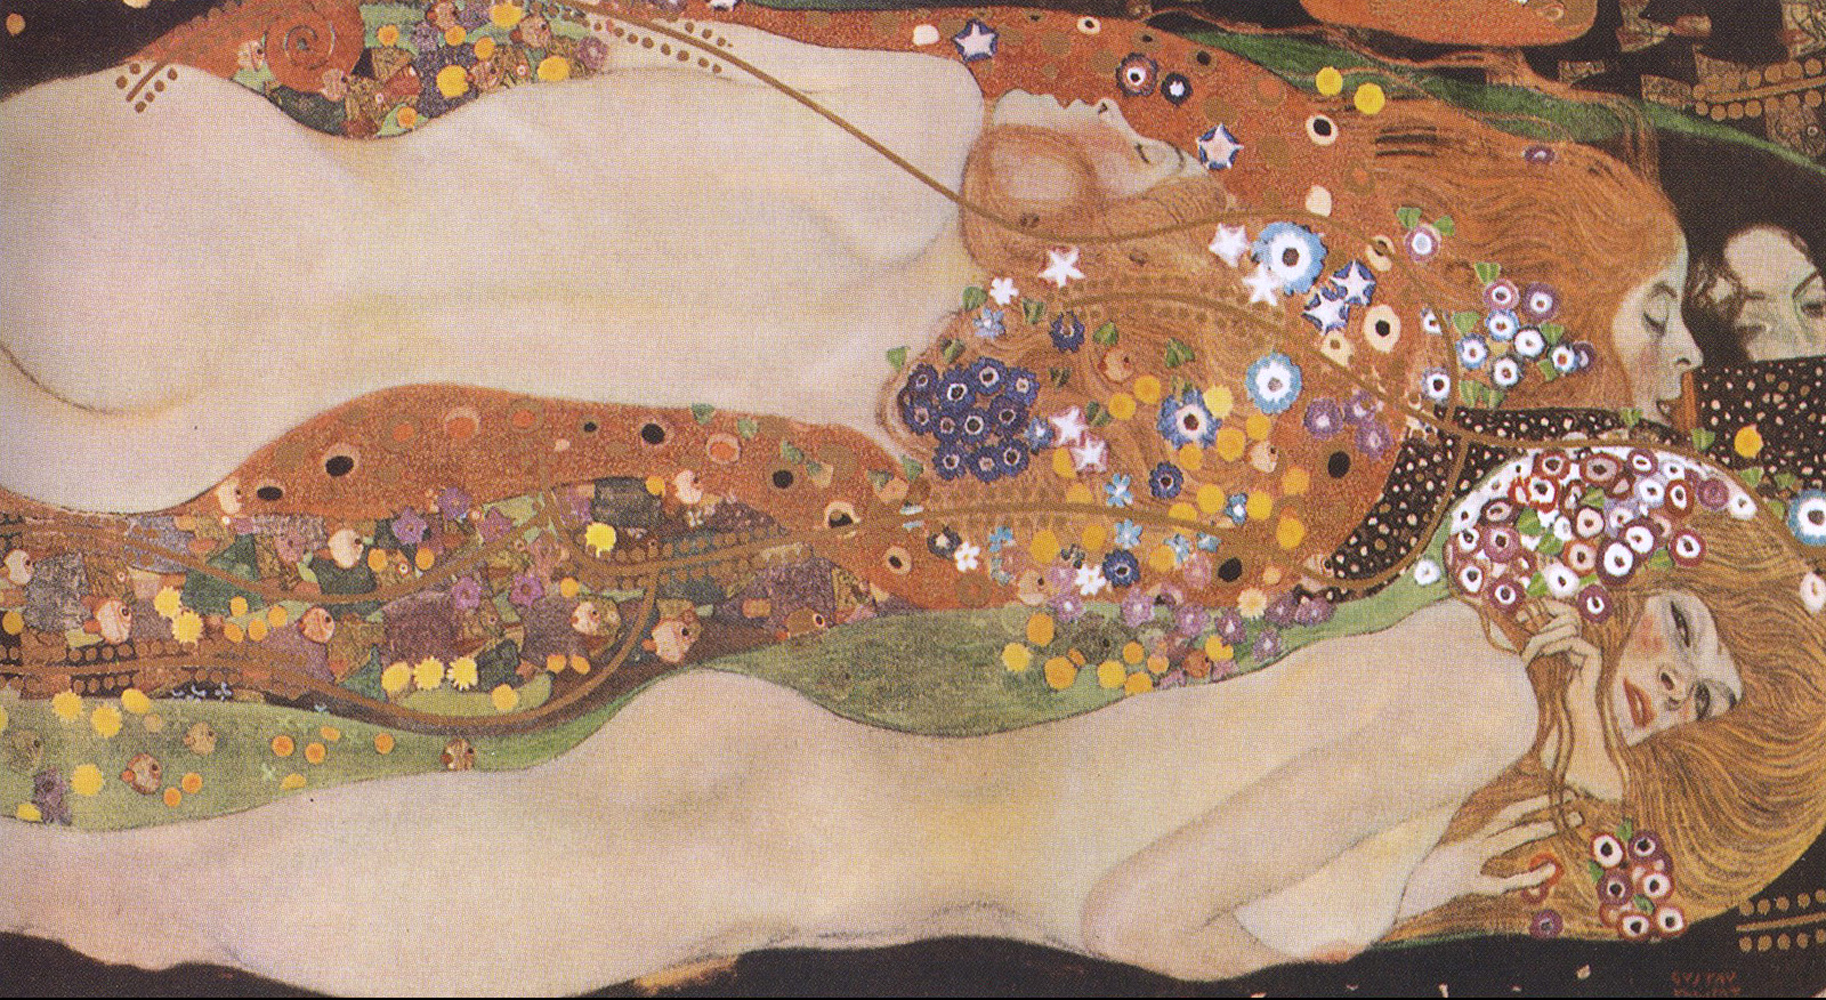 Serpientes II by Gustav Klimt - 1907 Colección privada